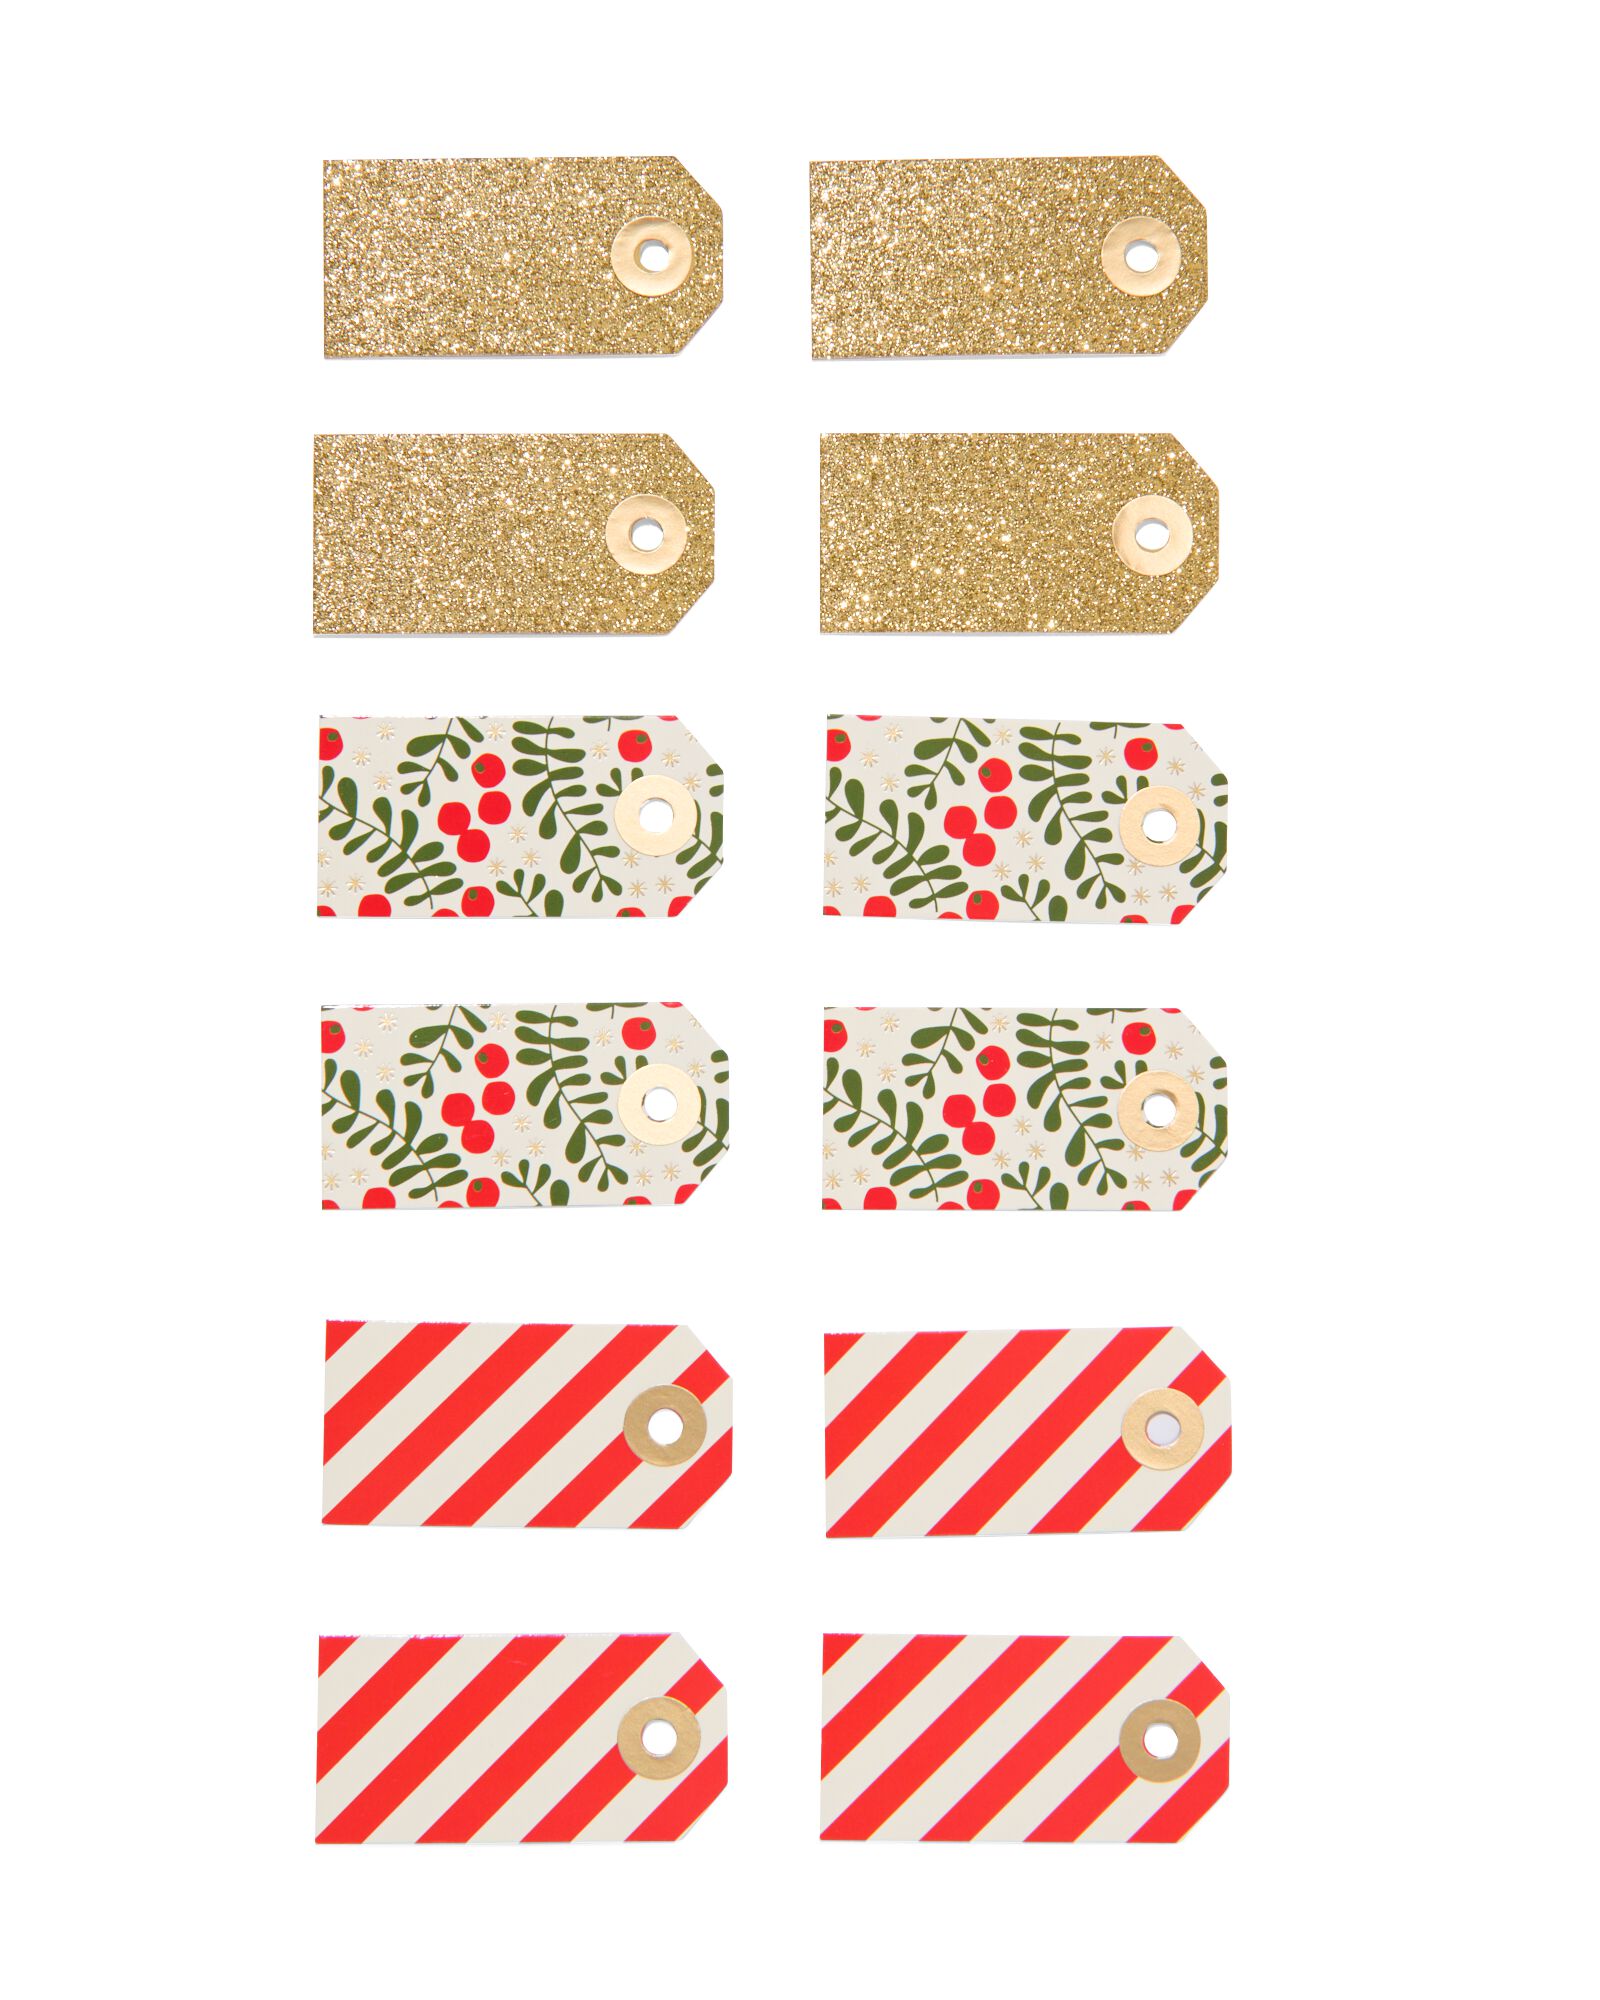 Étiquettes Paquets Cadeaux - Lot de 2 Planches de 12 étiquettes  Autocollantes pour Paquets Cadeaux - Dimensions d'une étiquette : 6cm